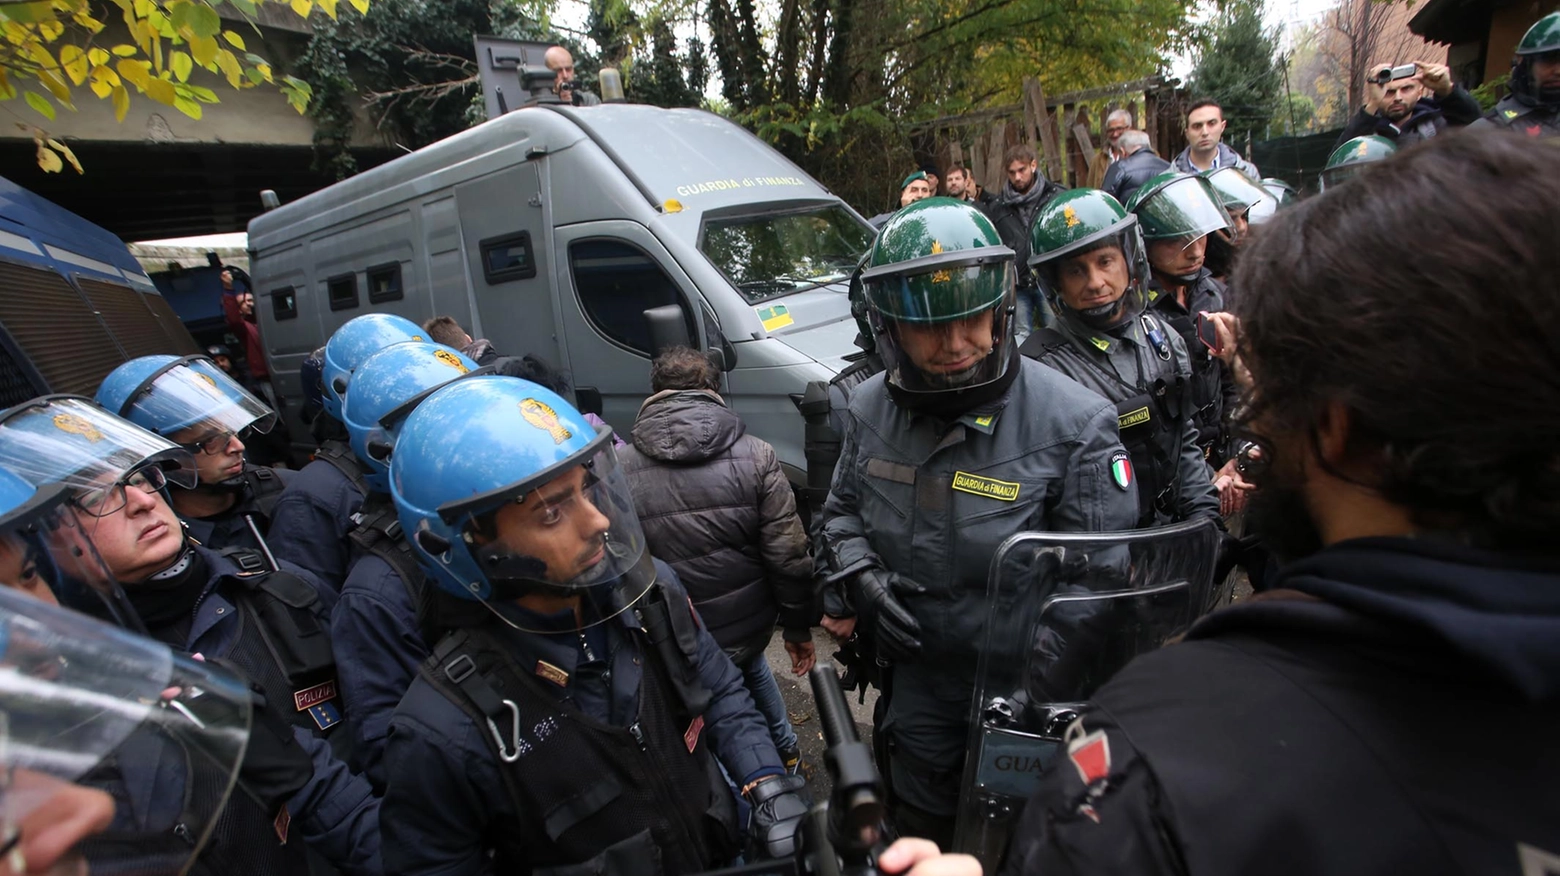 Le forze dell'ordine cercano di contenere gli anarchici (foto Schicchi)